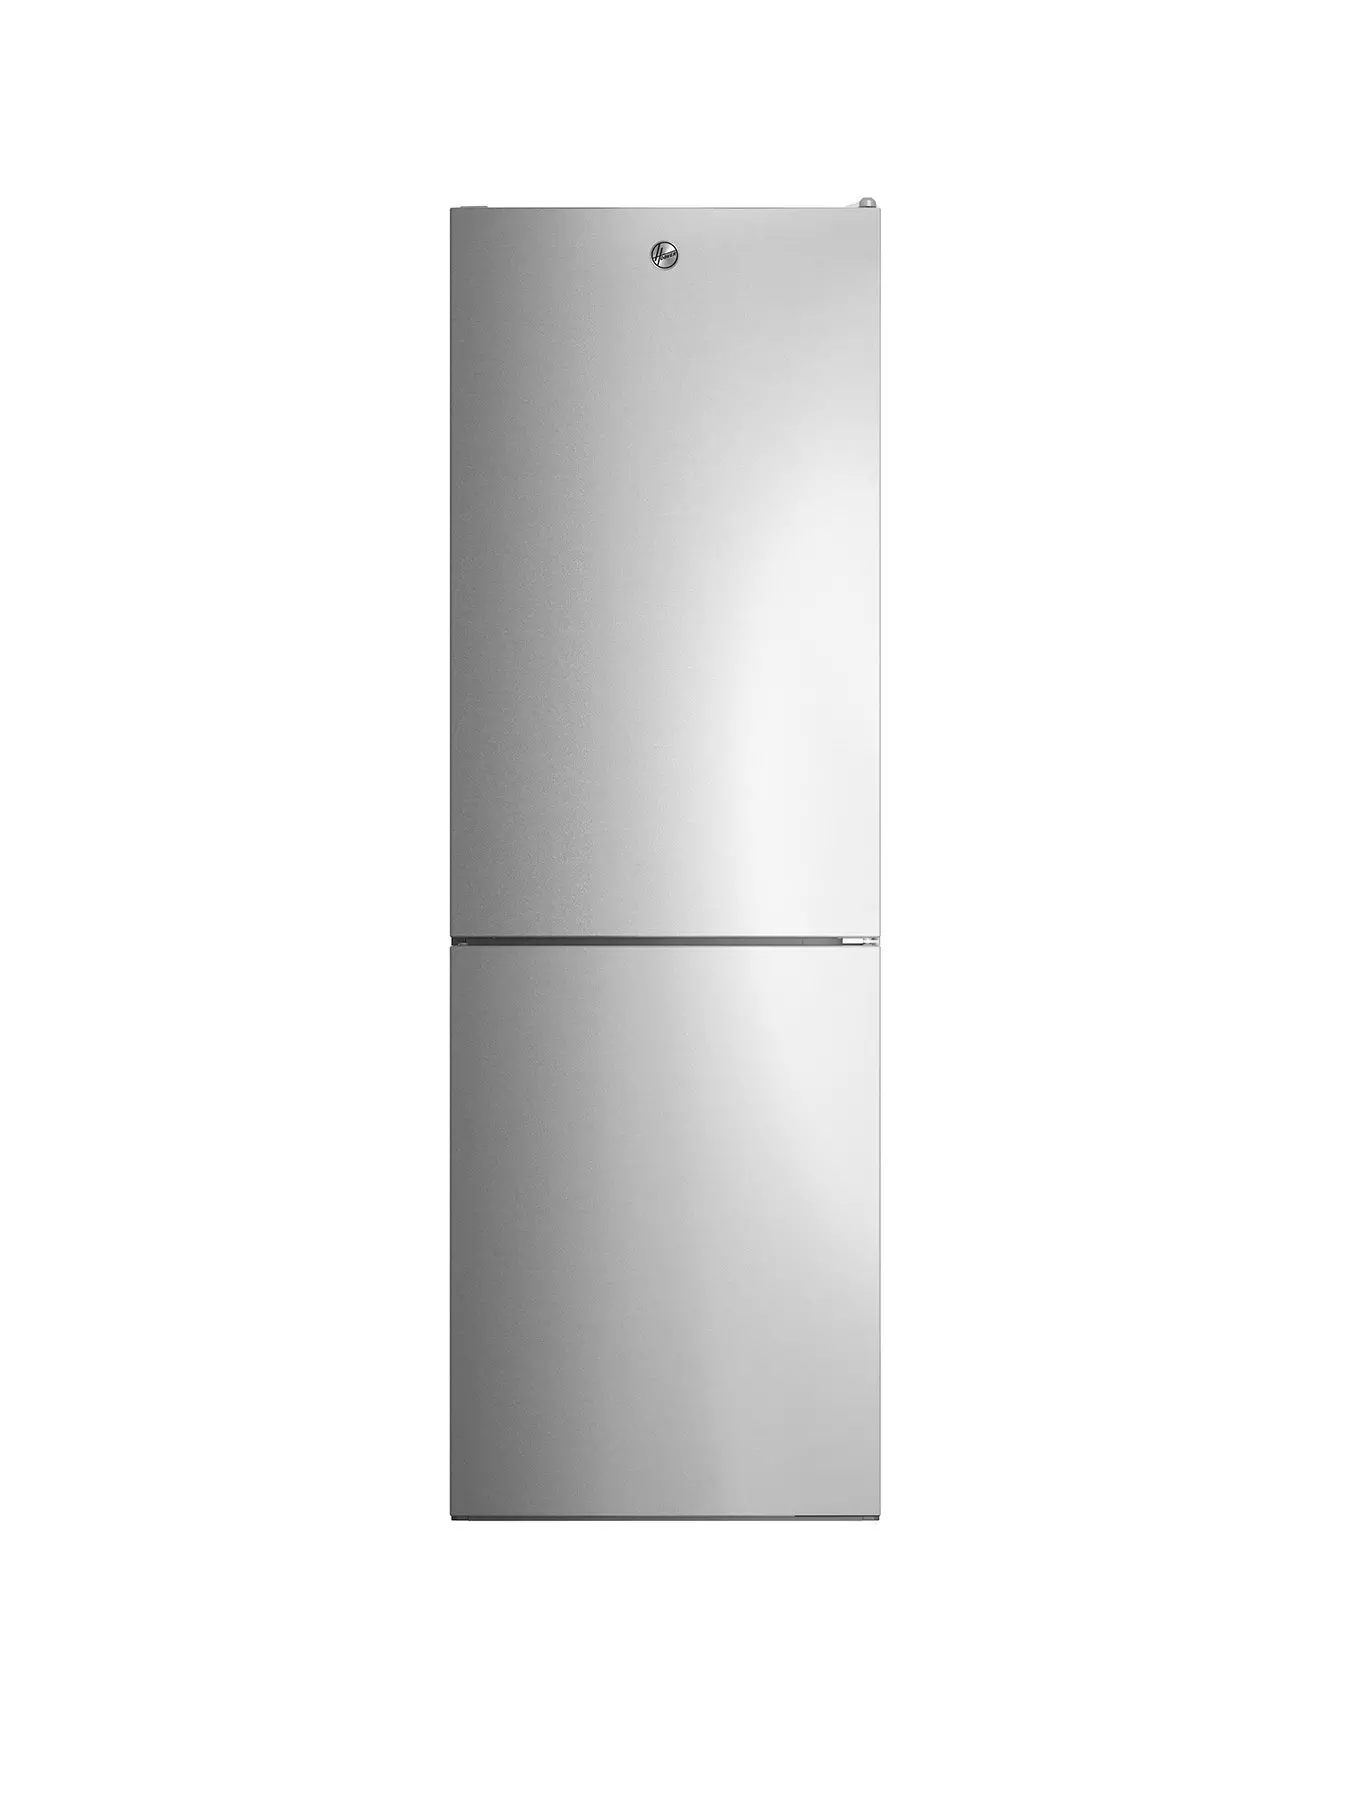 Absorbe Olores Para Refrigerador 40 Gramos – Do it Center